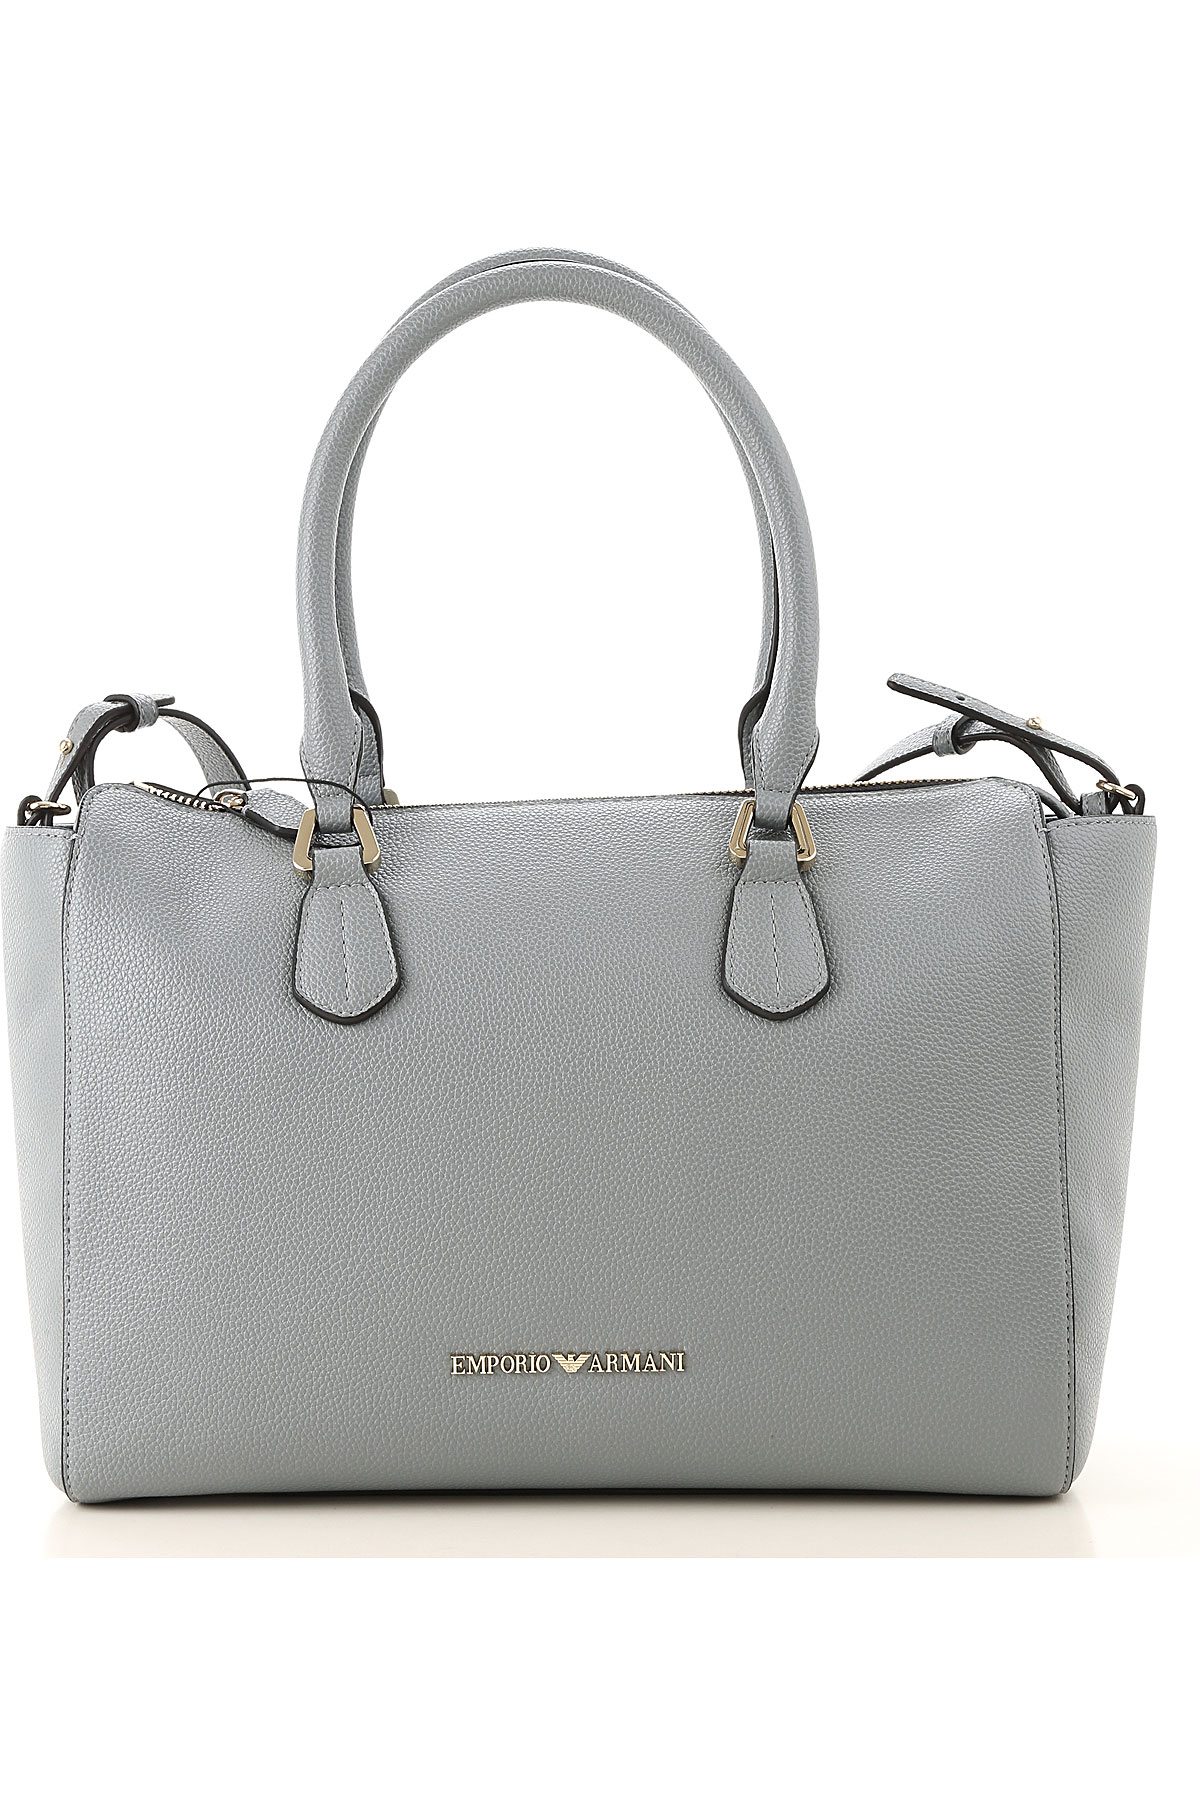 Handbags Emporio Armani, Style code: y3d137-yh65a-80155